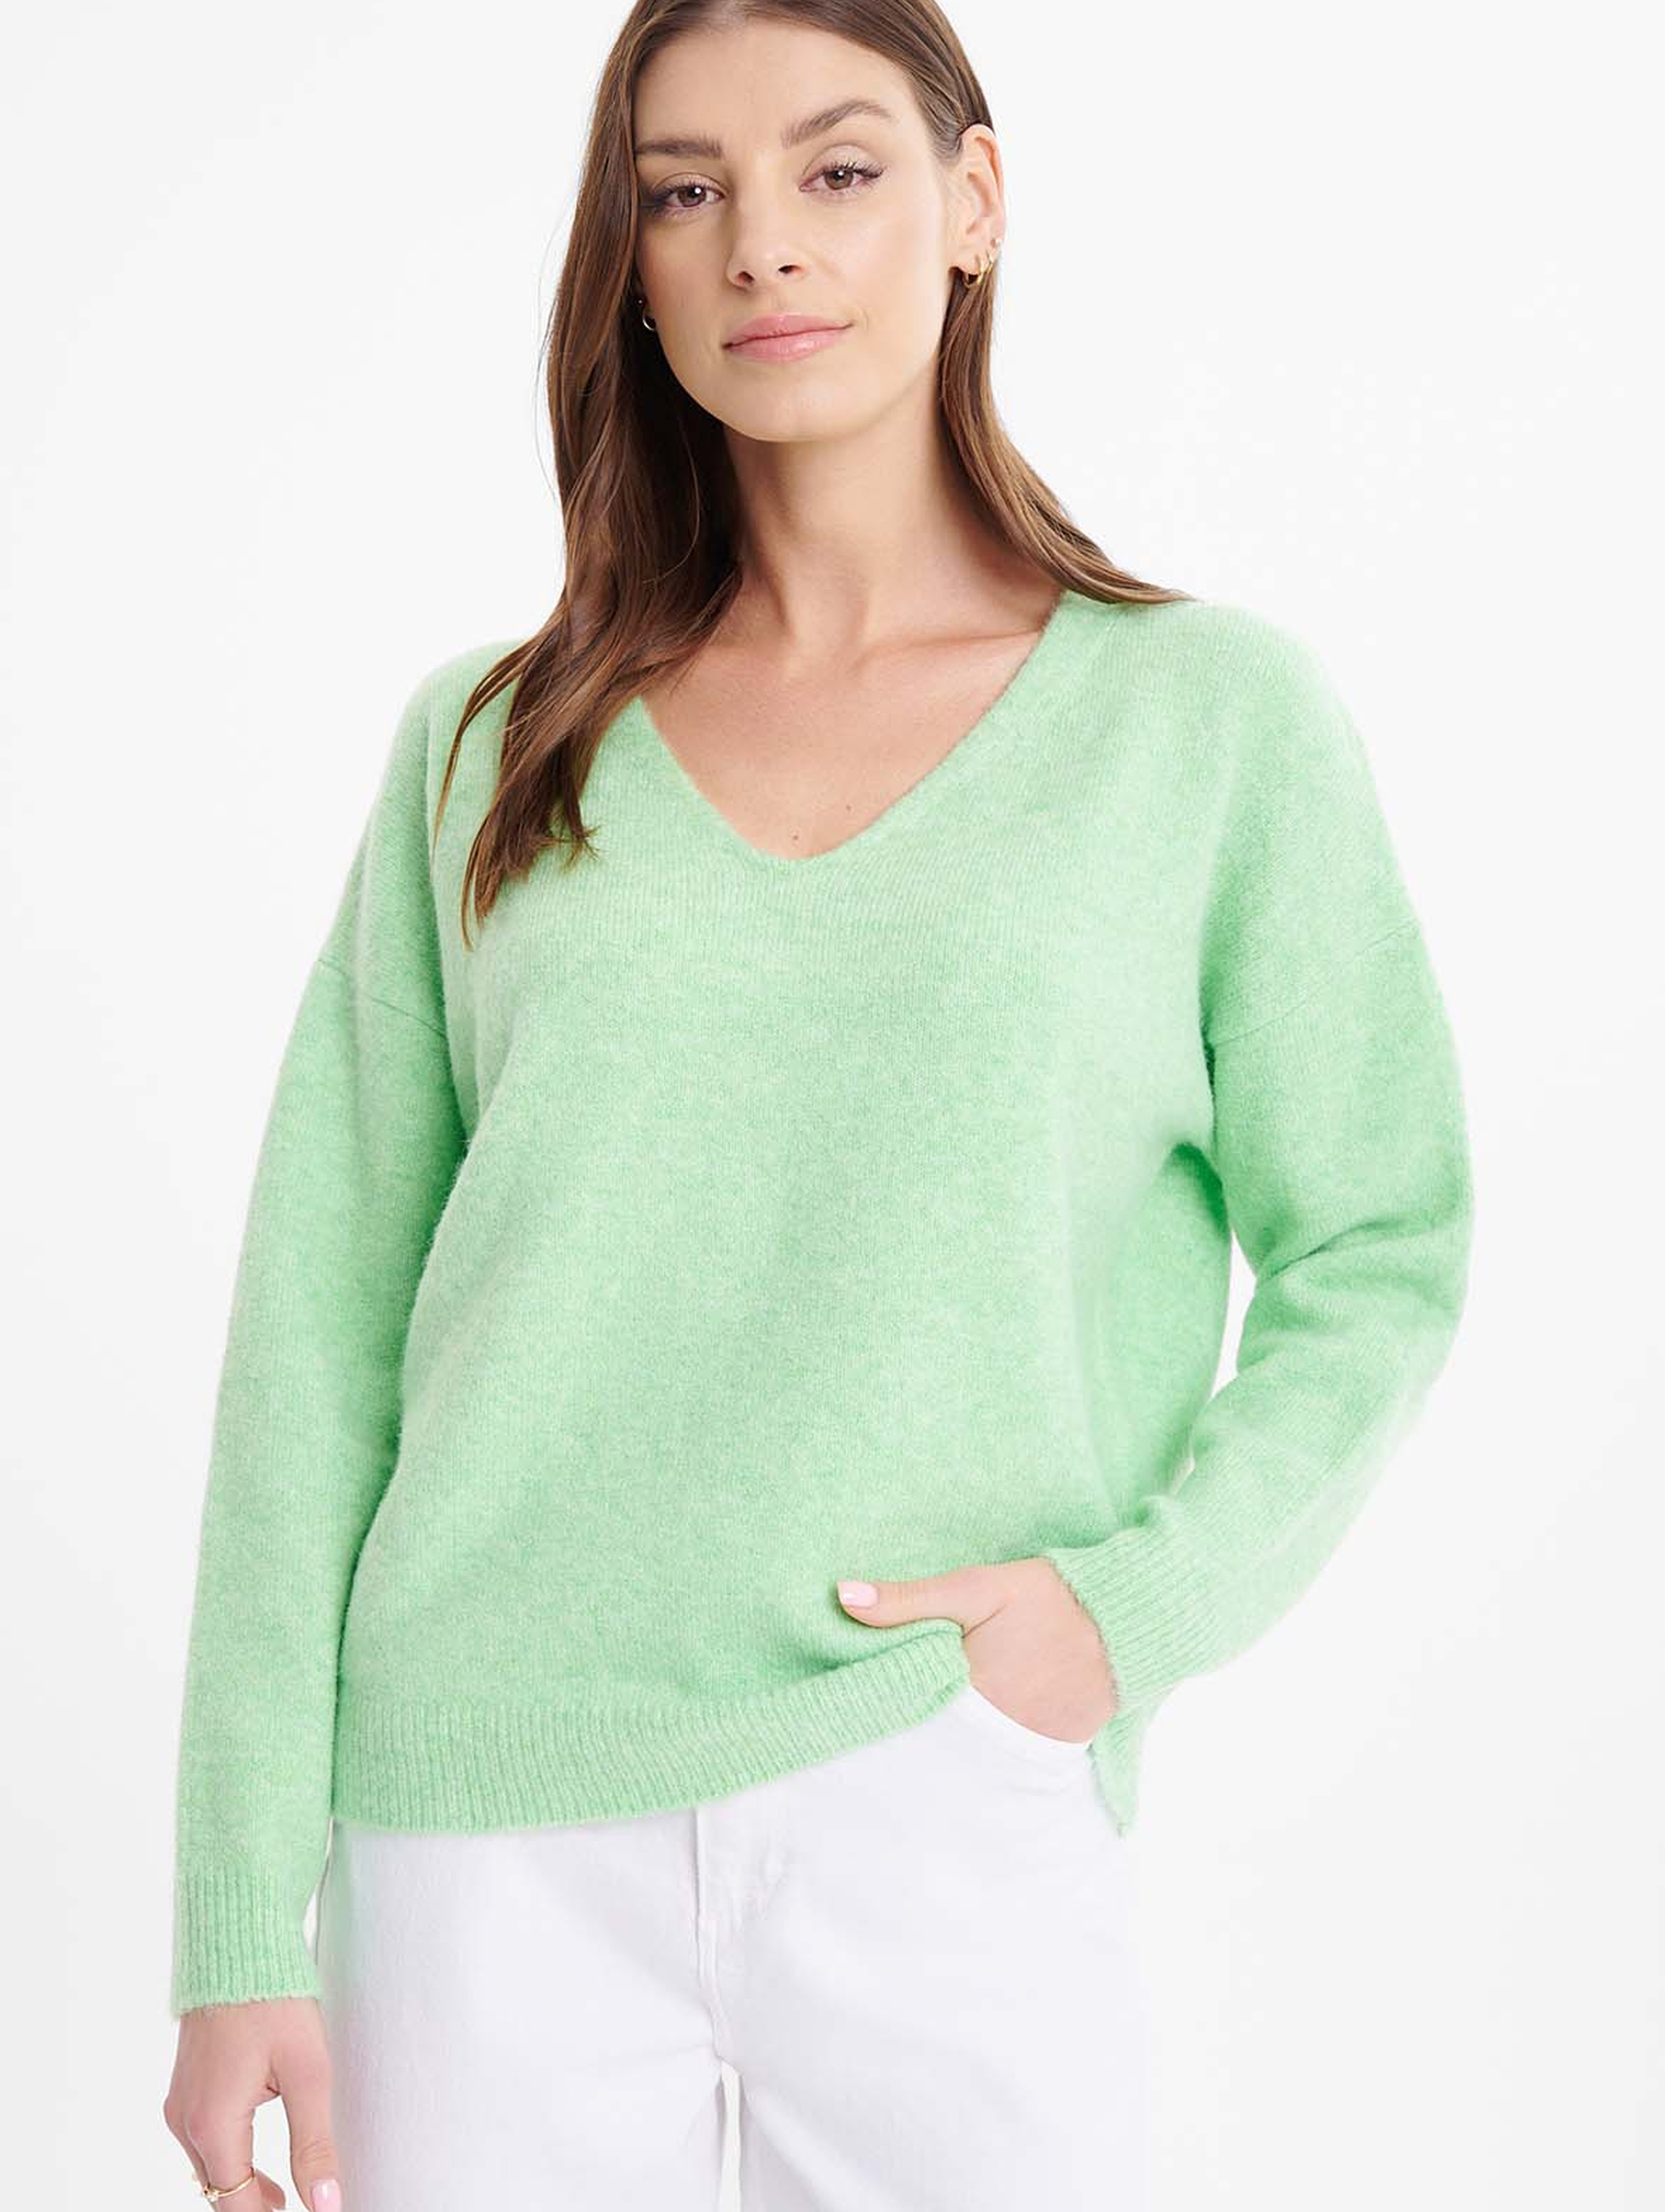 Damski sweter dzianinowy zielony z dekoltem V